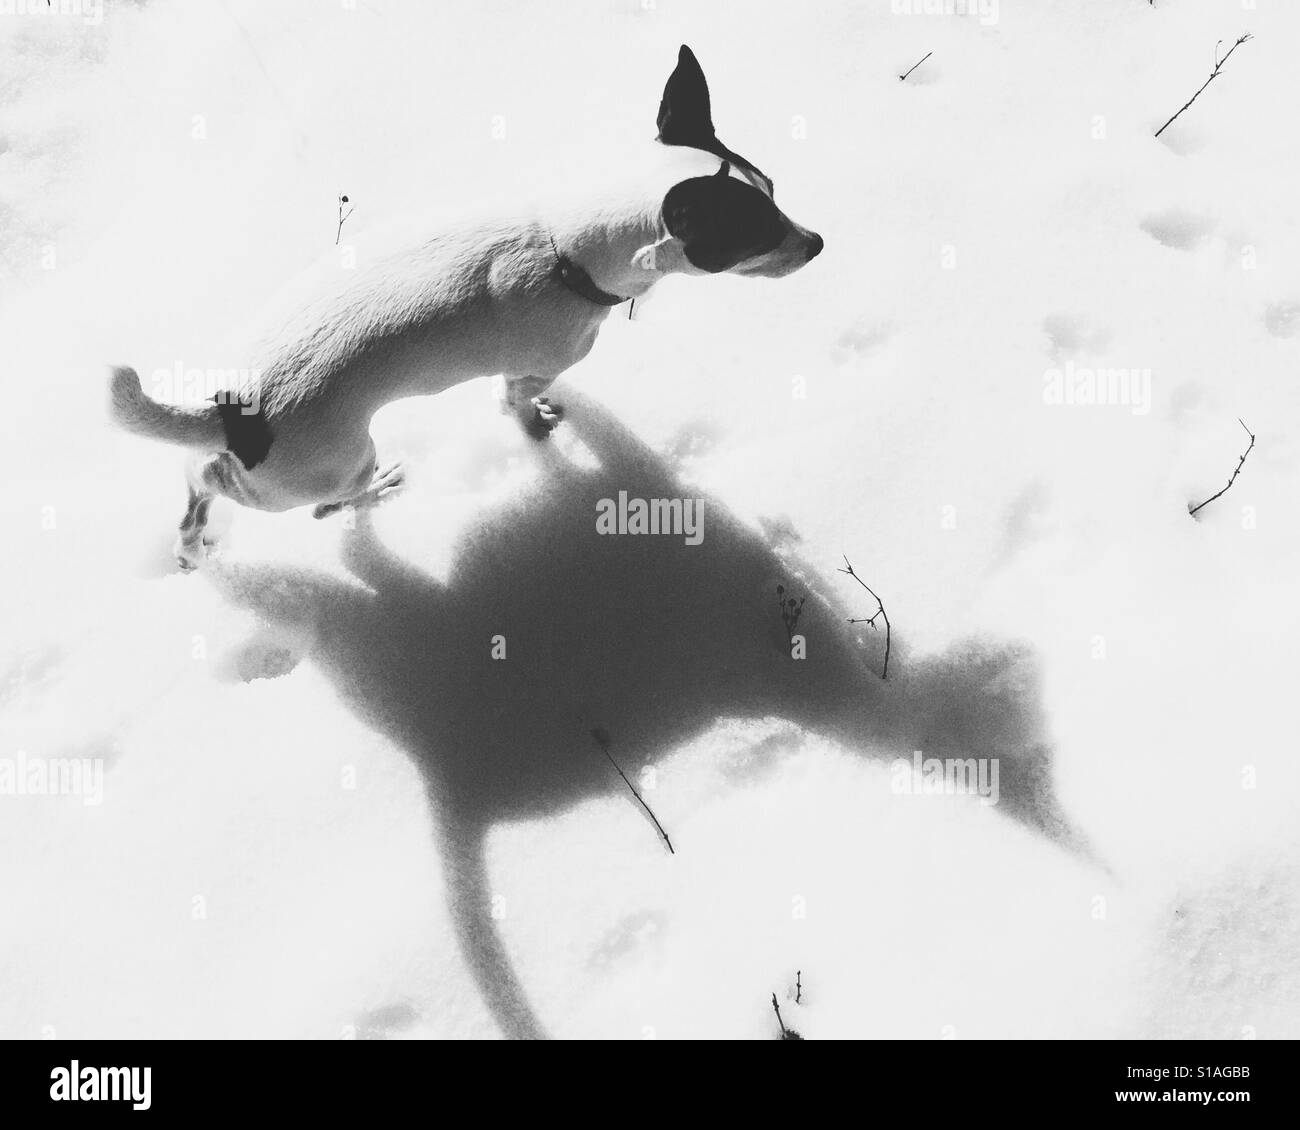 Jack Russell Terrier dog walking dans la neige en projetant une ombre qui ressemble à un chat. En noir et blanc. Banque D'Images